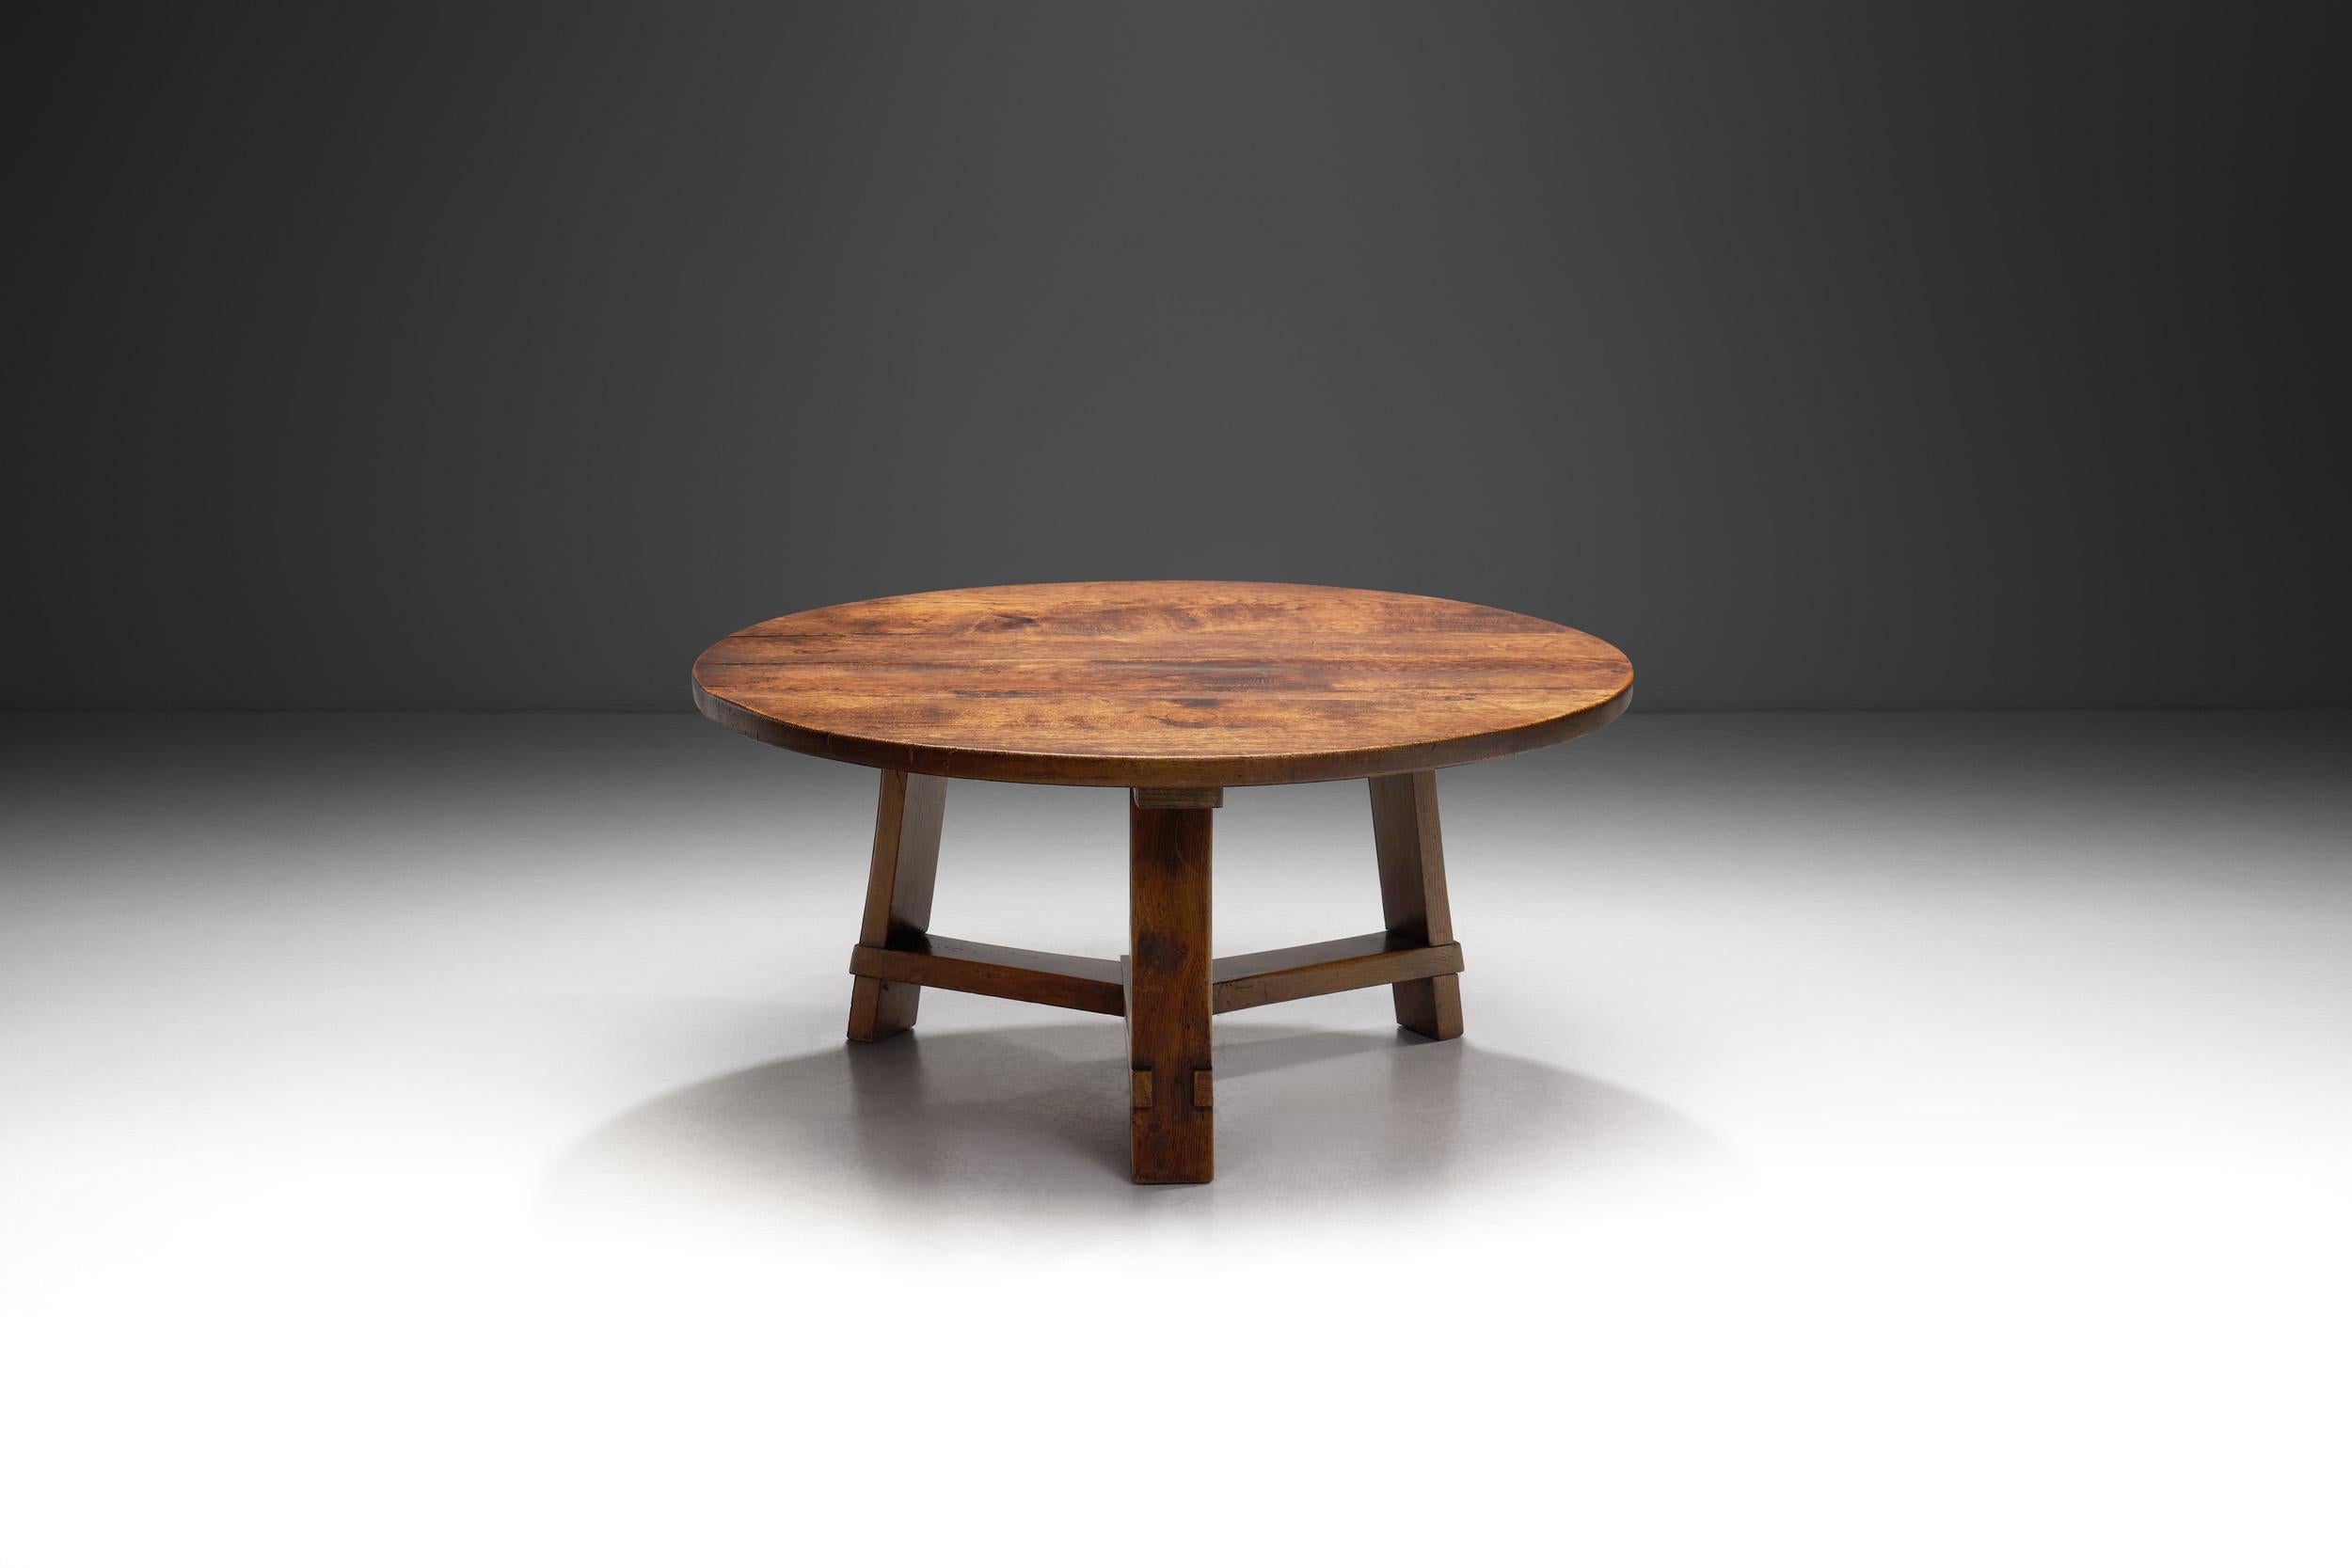 Les années 1960 ont marqué une ère importante dans la conception du mobilier néerlandais, caractérisée par une fusion de l'artisanat traditionnel et des concepts d'avant-garde. Un exemple exceptionnel de cette période est cette table basse en bois